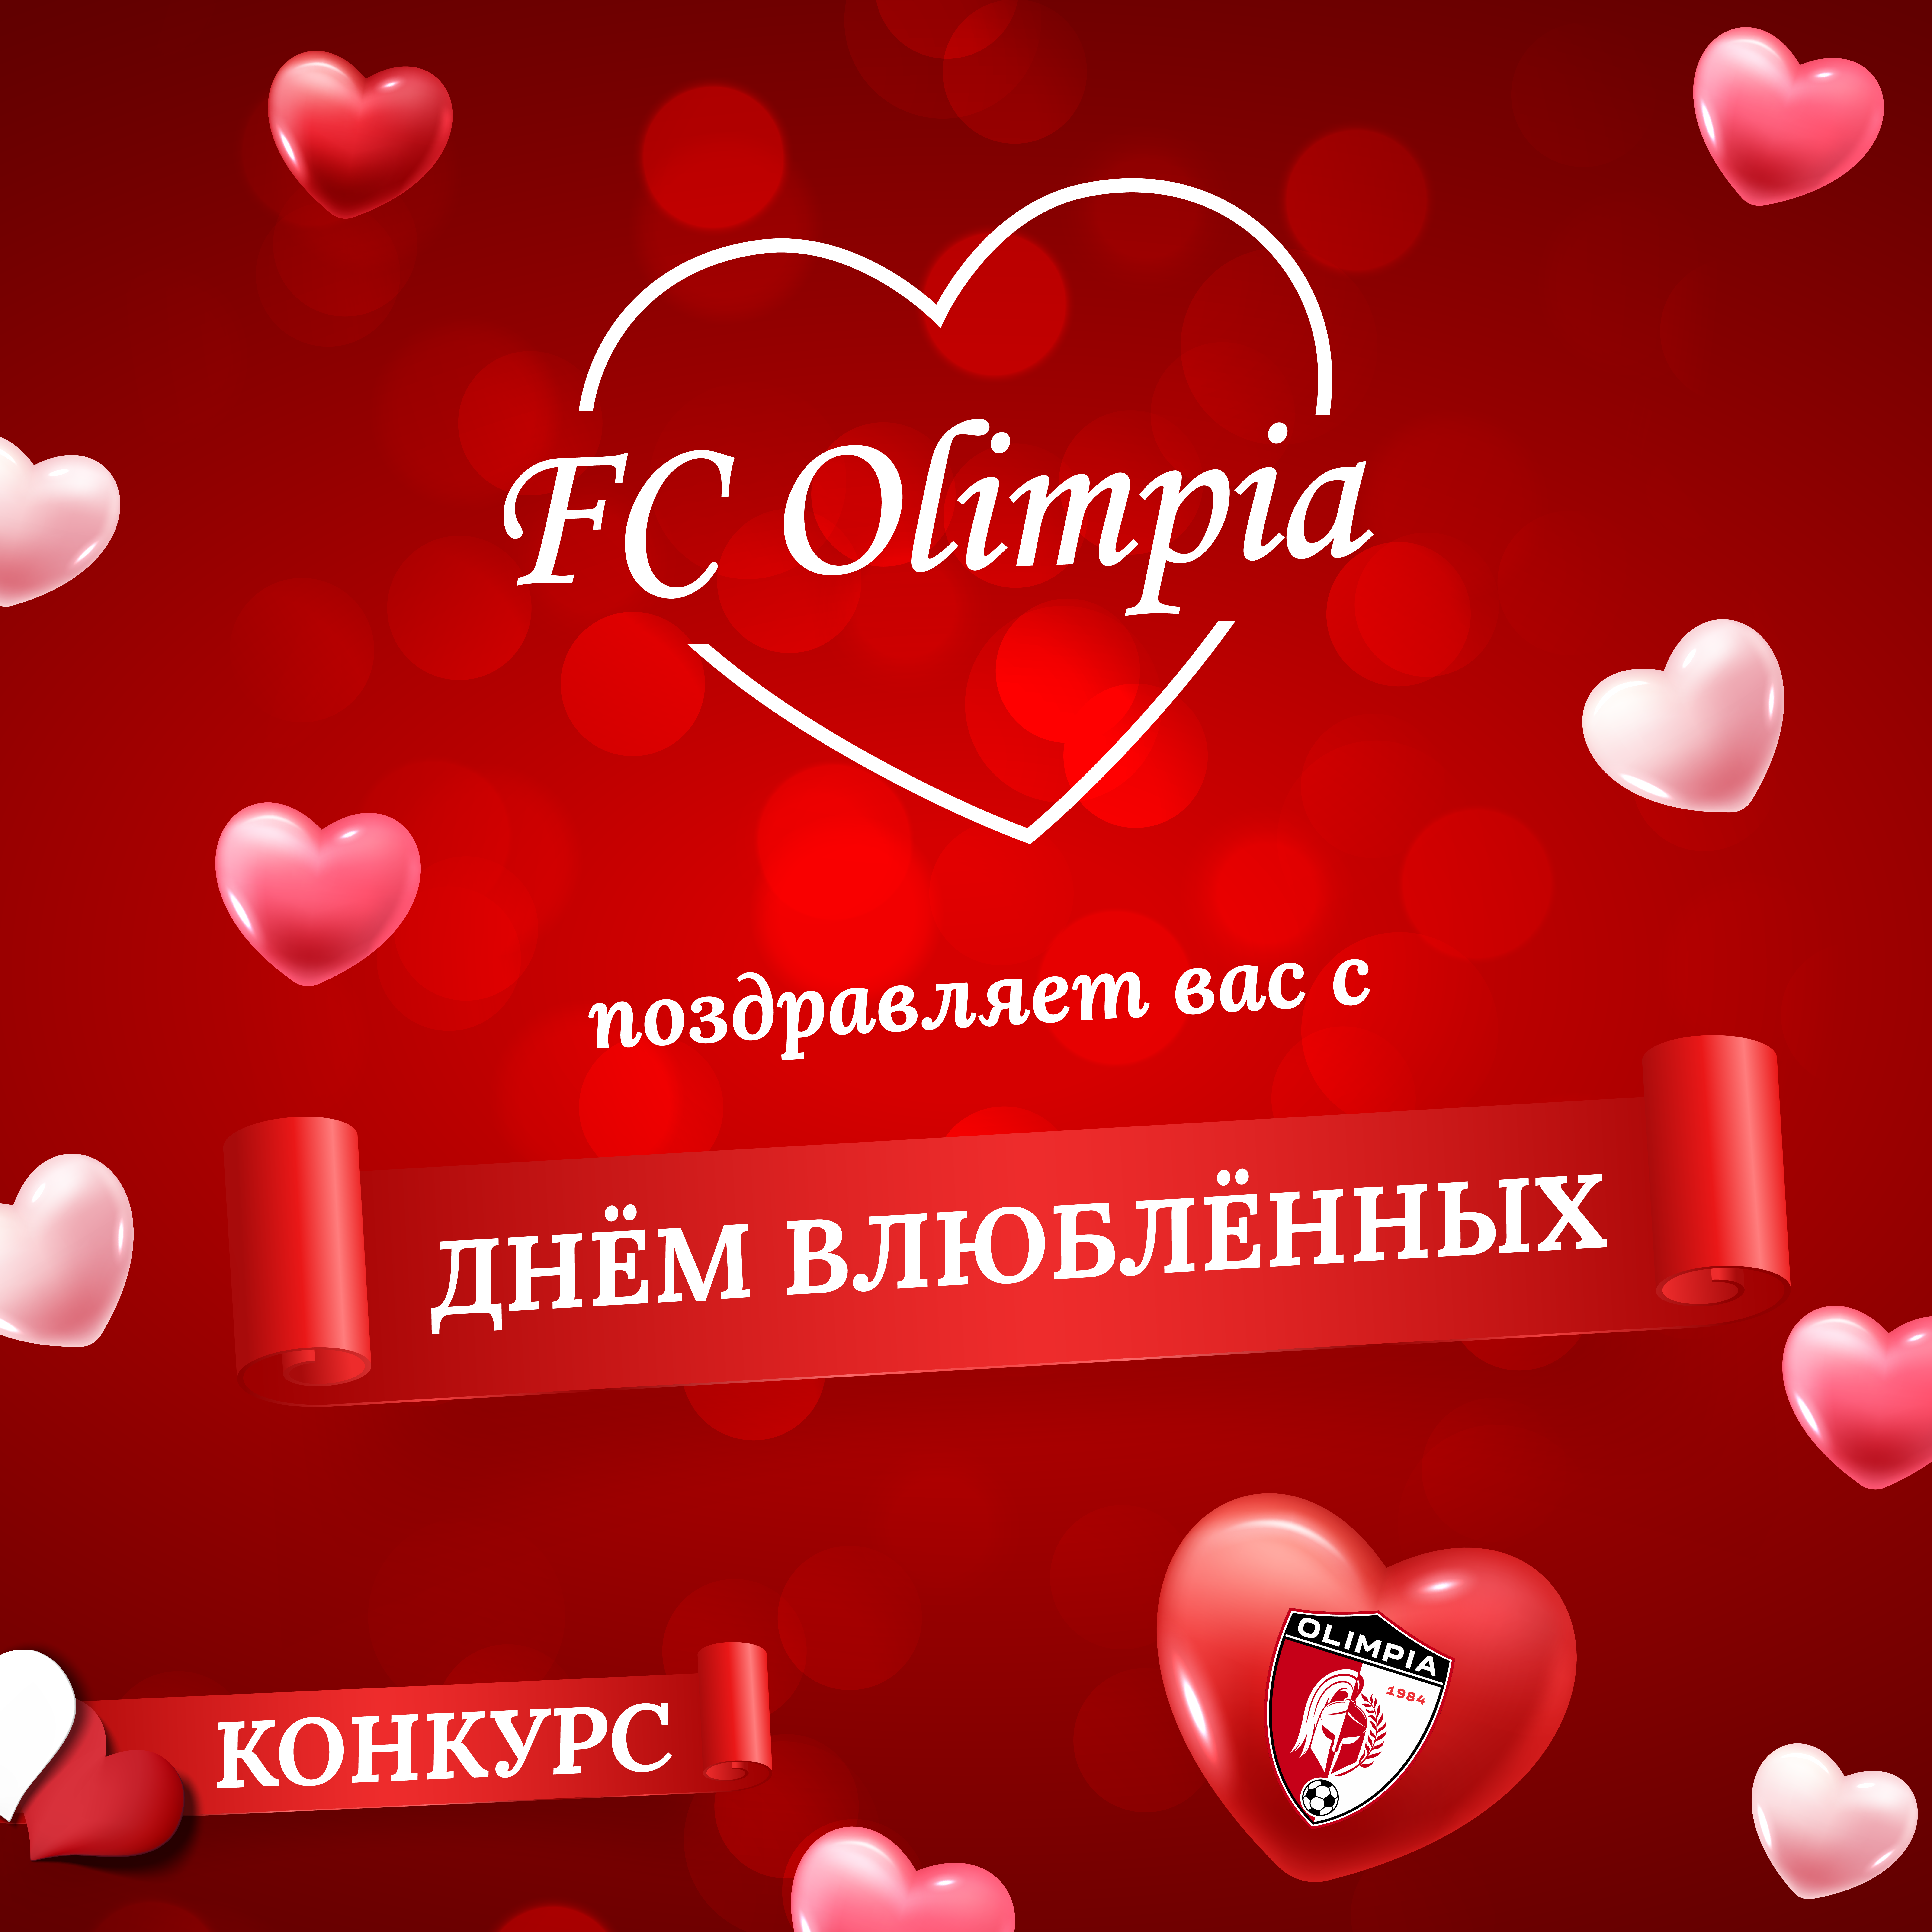 ФК Олимпия поздравляет всех с днём влюблённых